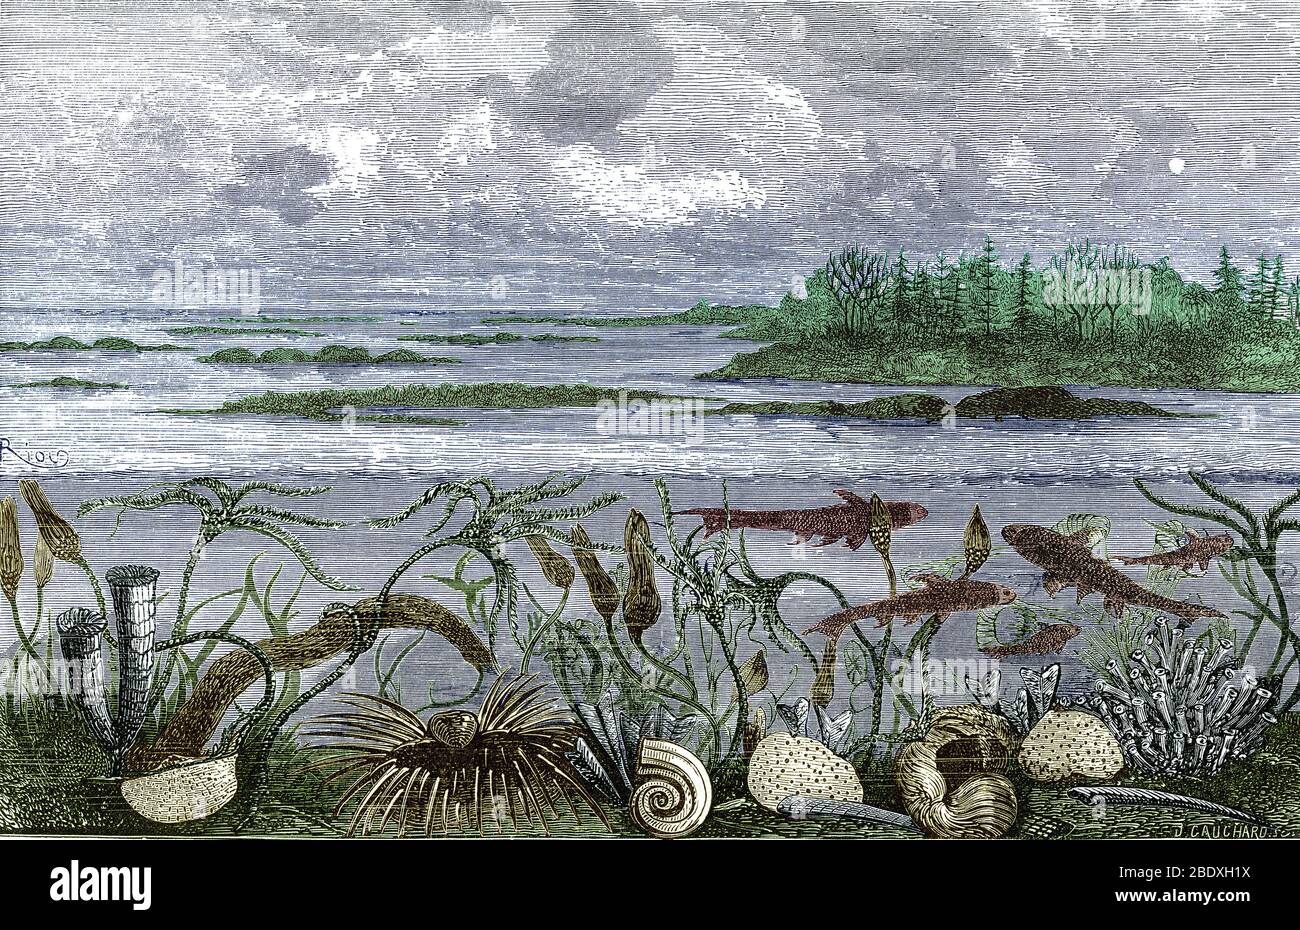 Vue idéale de la vie marine de la période carbonifère, du monde de Louis Figuier avant le Deluge, 1867. Sur la droite se trouvent des coraux rugose (Lithostrotion) et des éponges (Chaetetes et Plytopora). Le tube allongé devant ces derniers est Aploceras, un cephalopodes nautiloïdes. Au centre se trouvent un gastéropode (Bellerophon hiculus), un autre nautiloïde (Nautilus koninckii) et un brachiopodes (productus) avec des épines entourant sa coquille. Sur la gauche se trouvent un autre brachiopodes (Chonetes), des coraux plus rugose (Cyathophyllum) et des crinoïdes (Cyathocrinus et Platycrinus) qui se tordient dans l'eau. Les poissons sont UN Banque D'Images